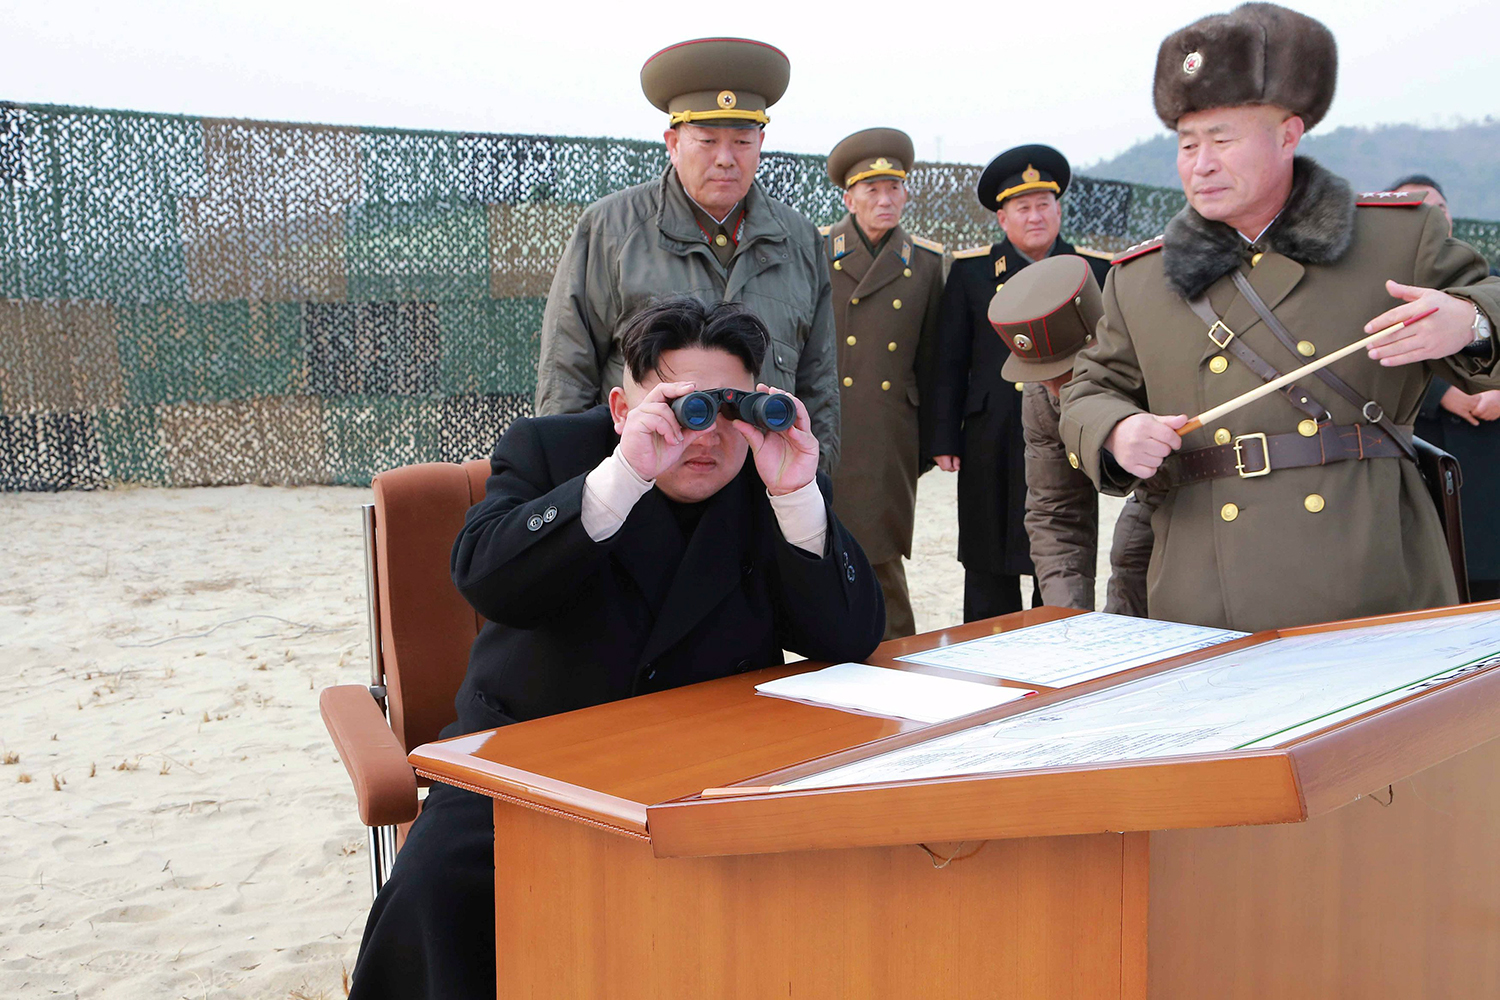 Corea del Norte pide que se prepare todo el arsenal nuclear para usarlo "en cualquier momento"